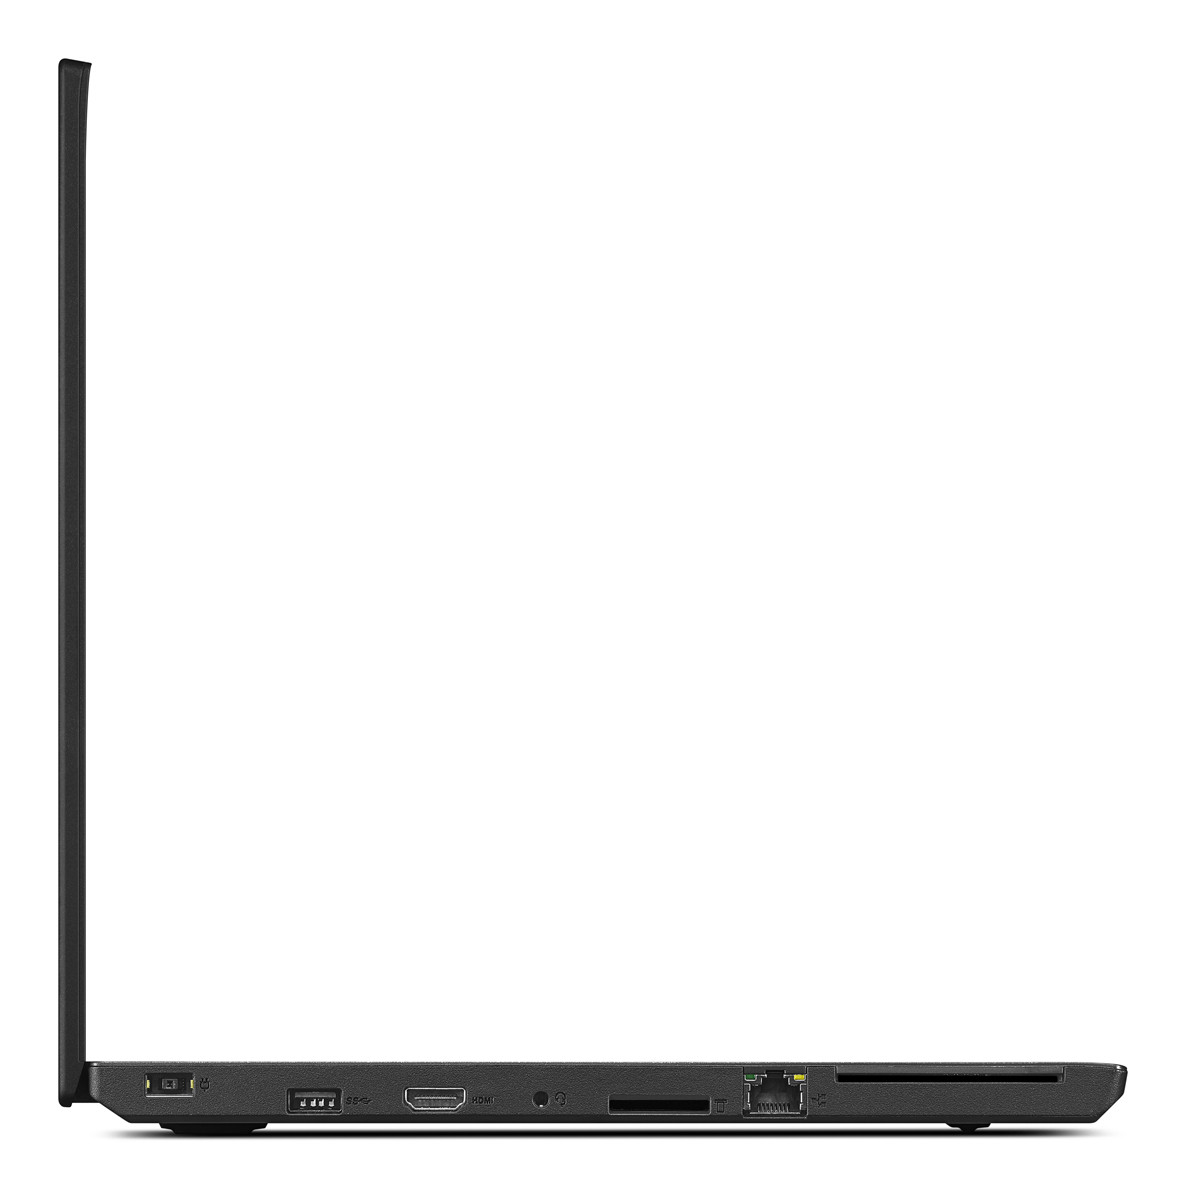 Lenovo ThinkPad T560 Ultrabook Core i5-6300U 2,40GHz 8GB RAM 256GB SSD Win 10 Pro